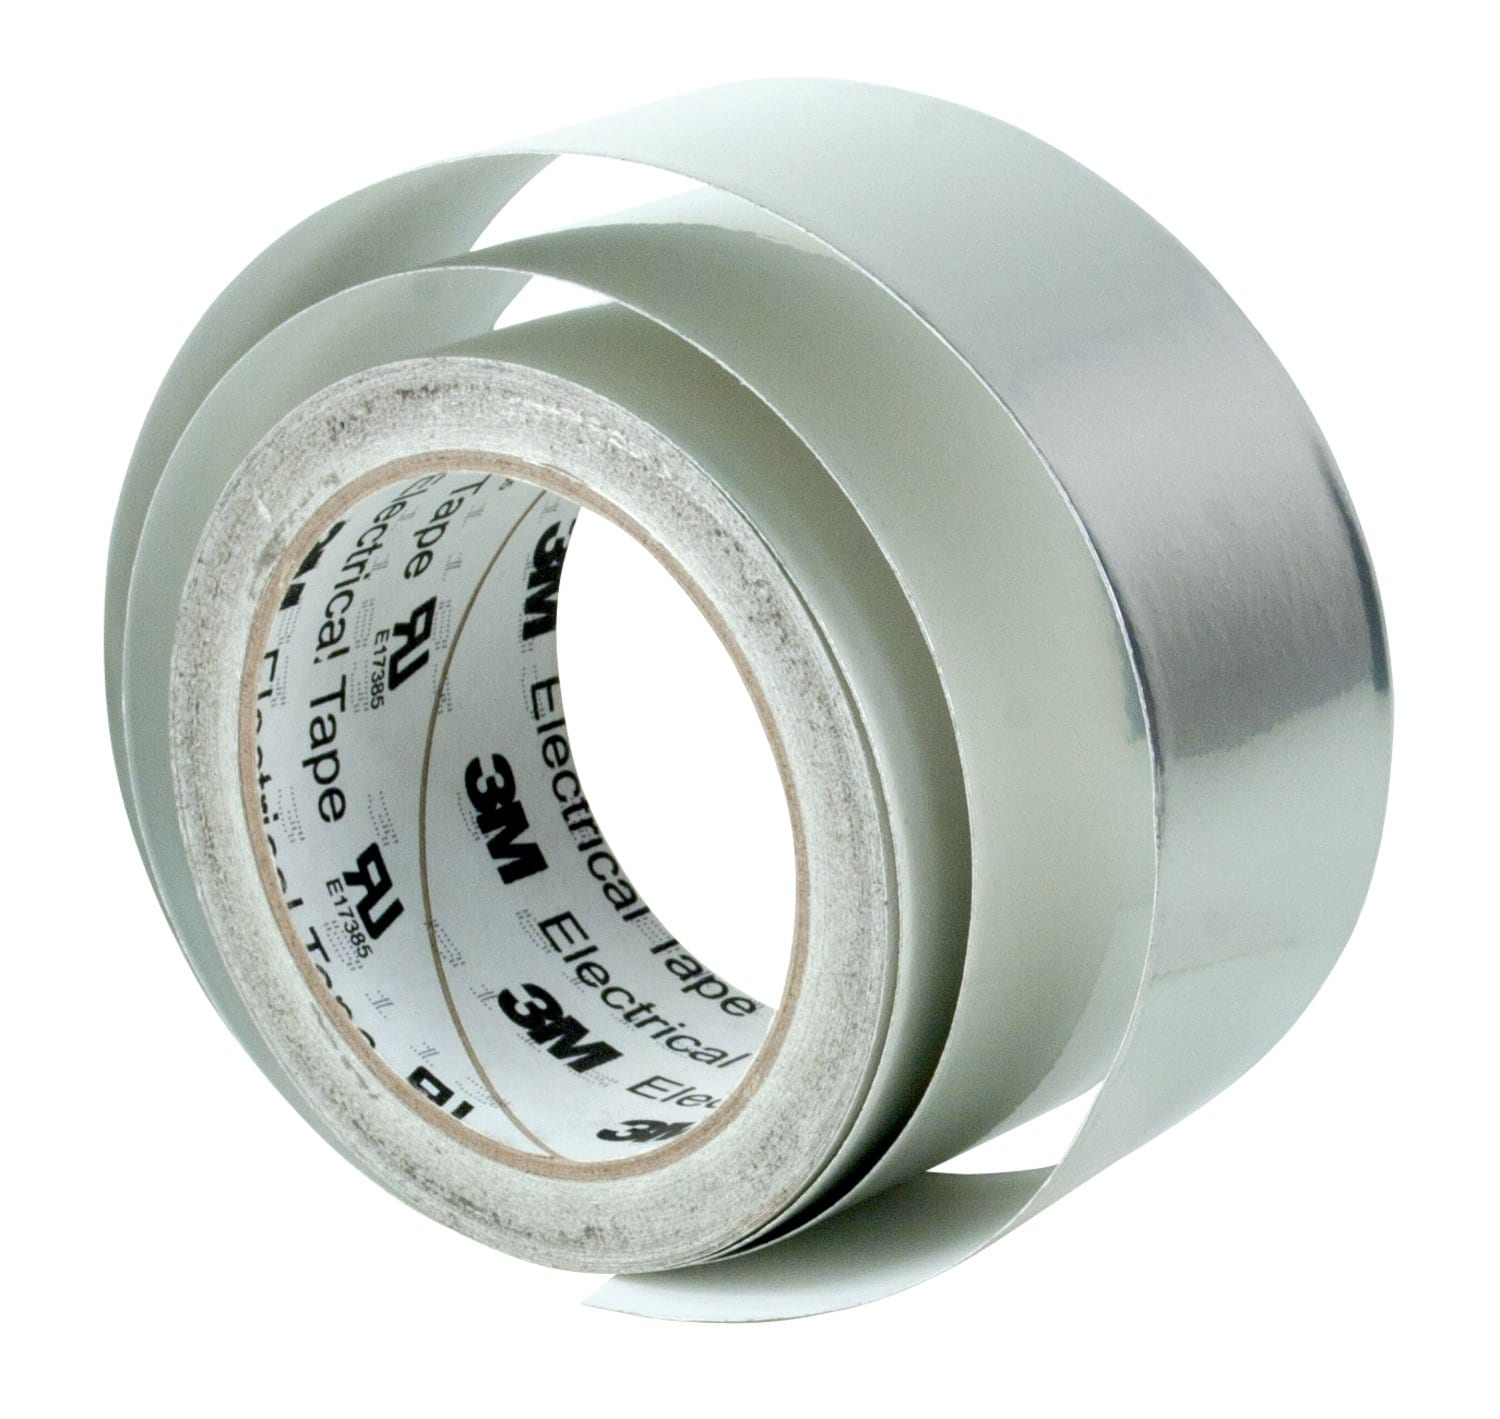 7100040587 - 3M Tin-Plated Copper Foil EMI Shielding Tape 1183, 41 mm x 50 m, 3 in
Paper Core, 7 Rolls/Case